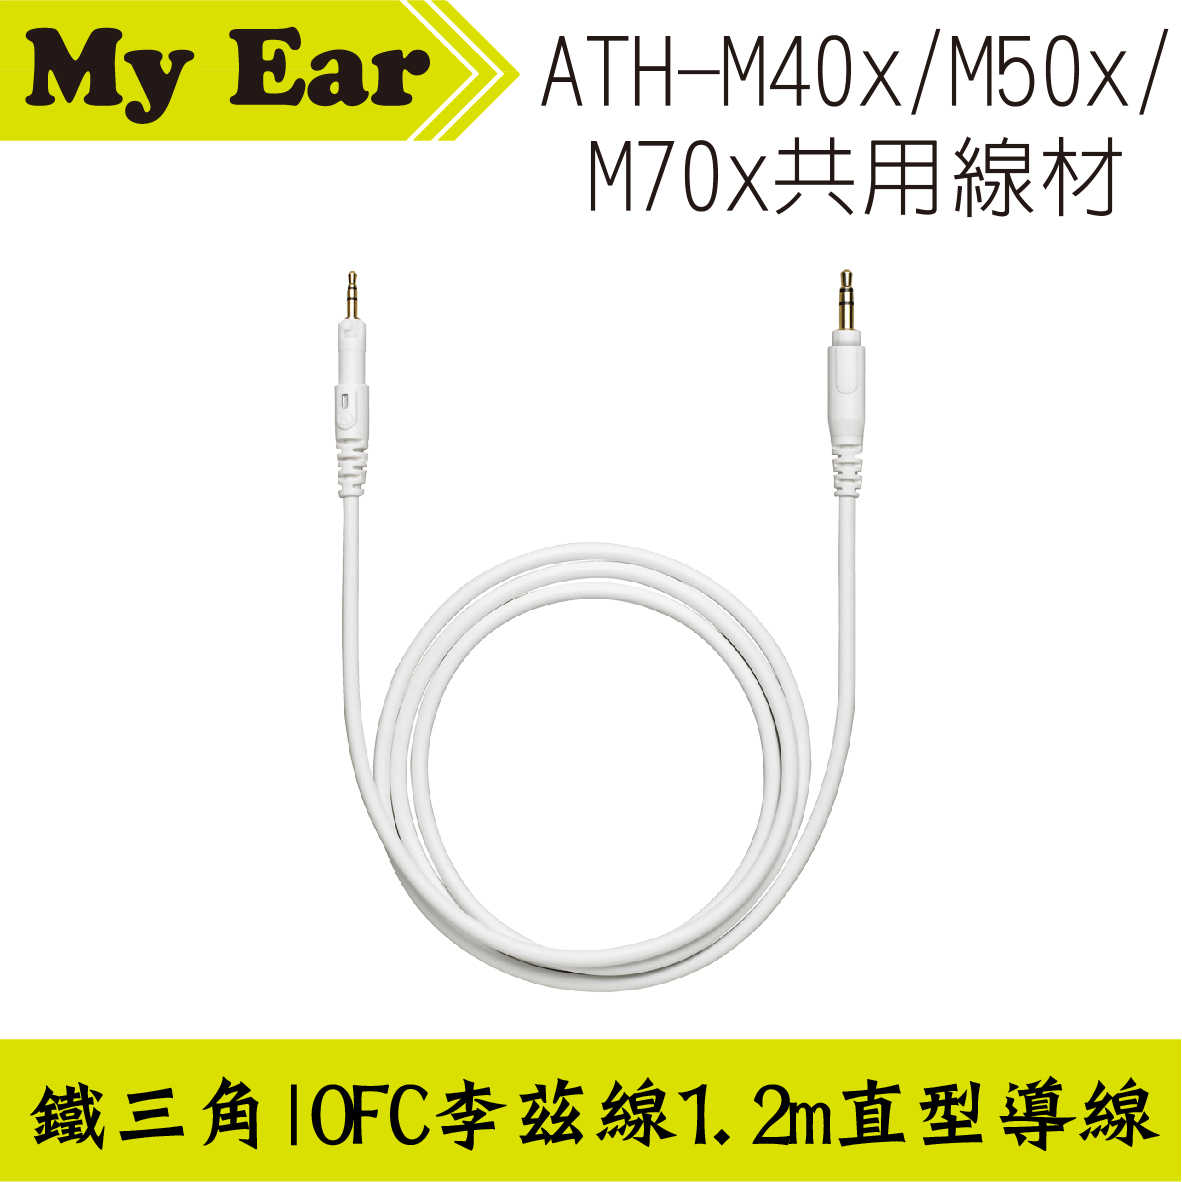 鐵三角 ATH-M40x M50x M70x 適用 可拆式 直型導線 1.2m | My Ear 耳機專門店